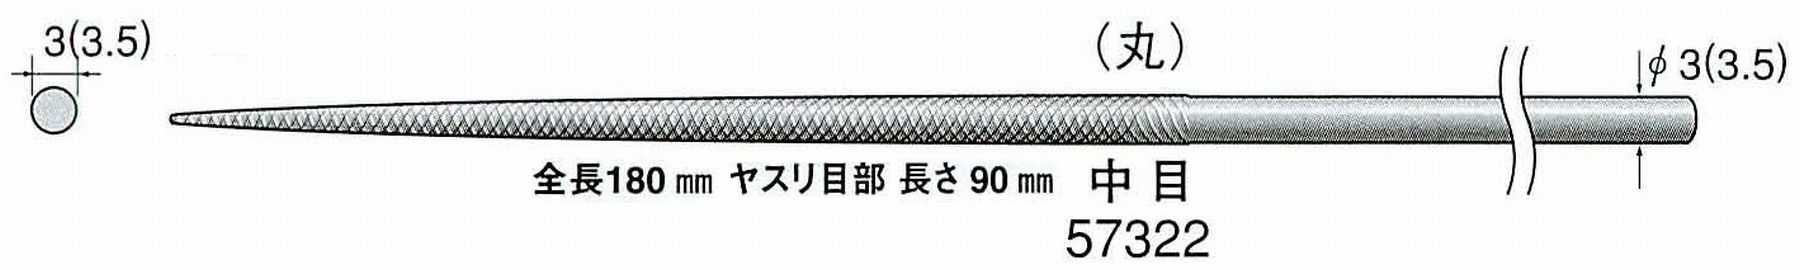 ナカニシ/NAKANISHI 精密仕上げヤスリ 丸 中目 軸径(シャンク)φ3.0mm(3.5) 57322